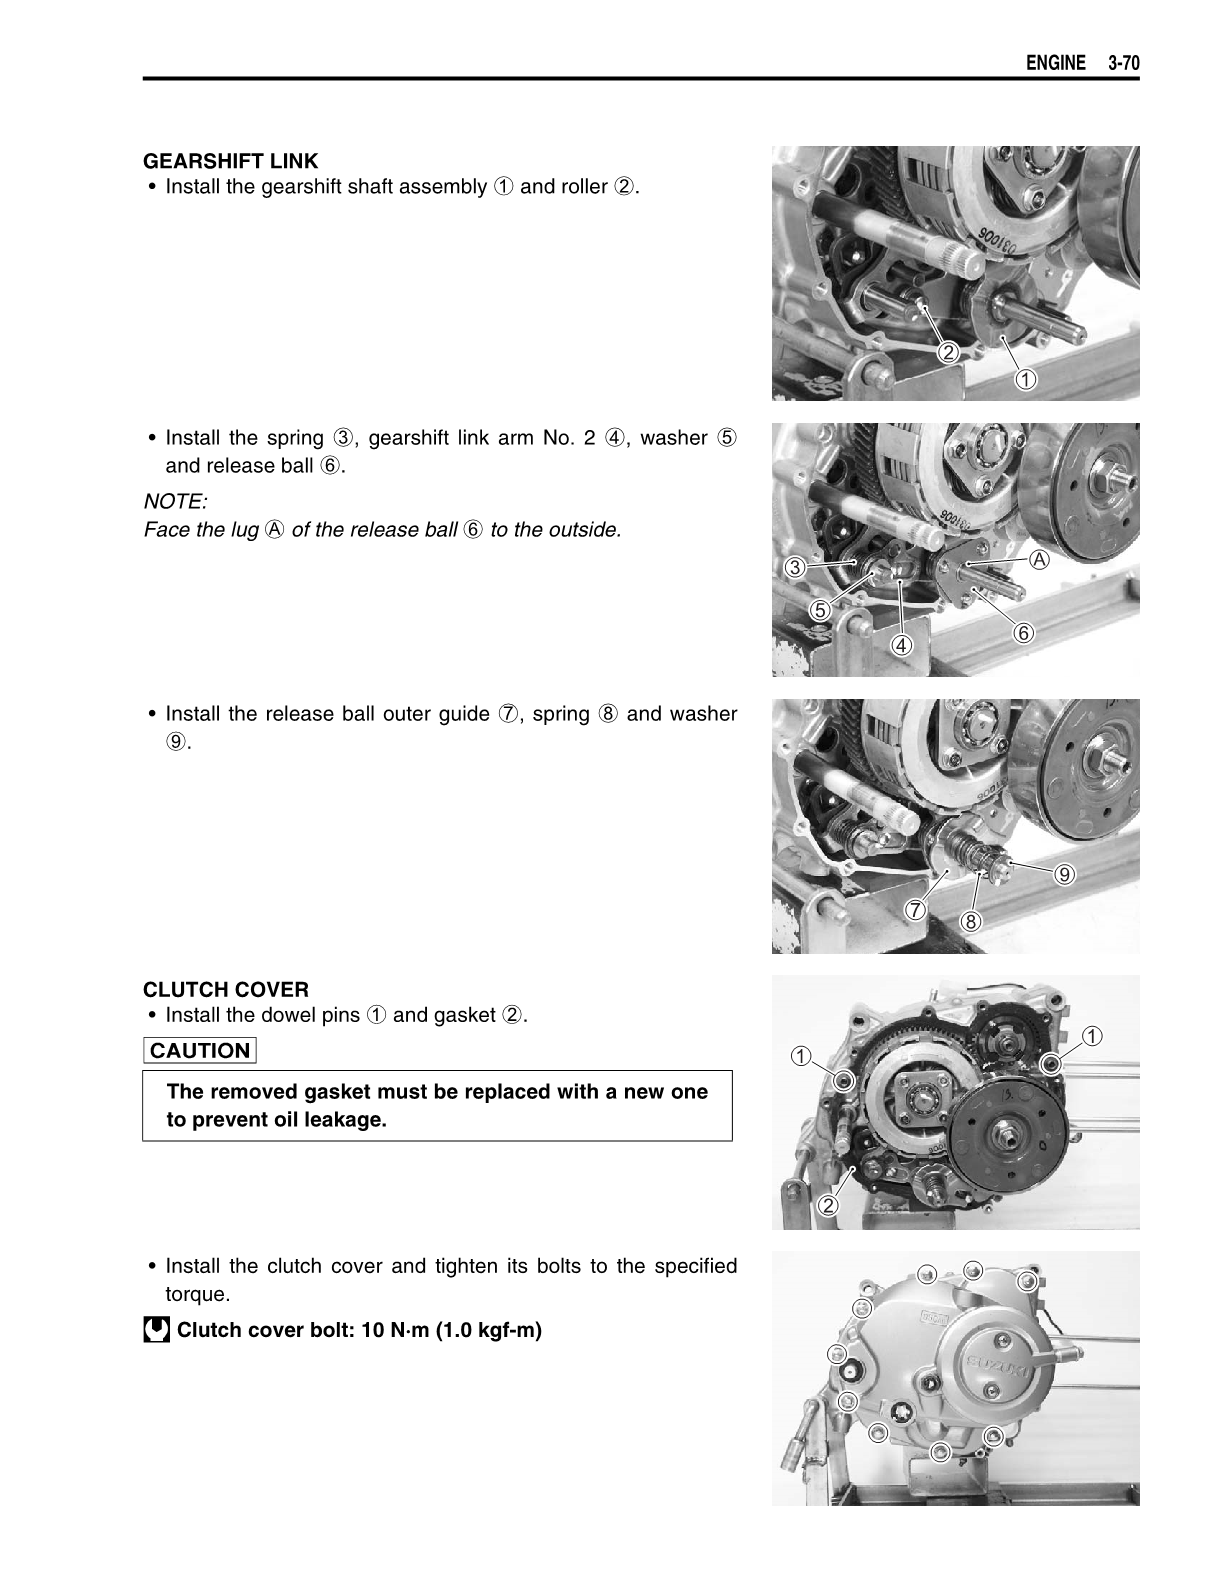 2007-2015 Suzuki FL125 FL125S Address Scooter Service Manual